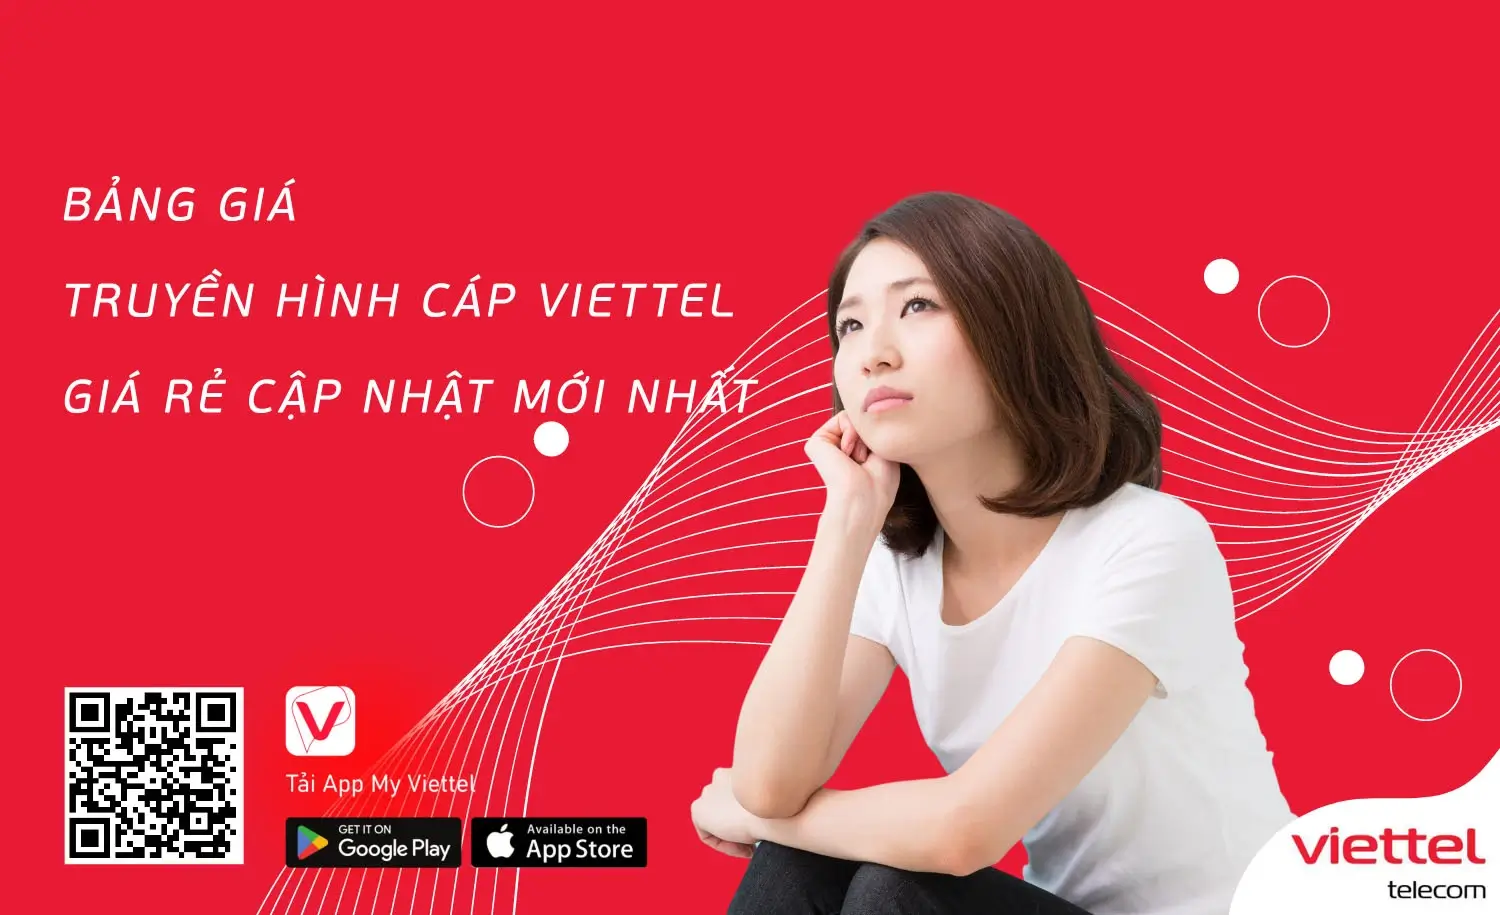 Hòa Nhập Công Nghệ Mới Truyền Hình TV360 Của Viettel Tại Châu Thành A Hậu Giang